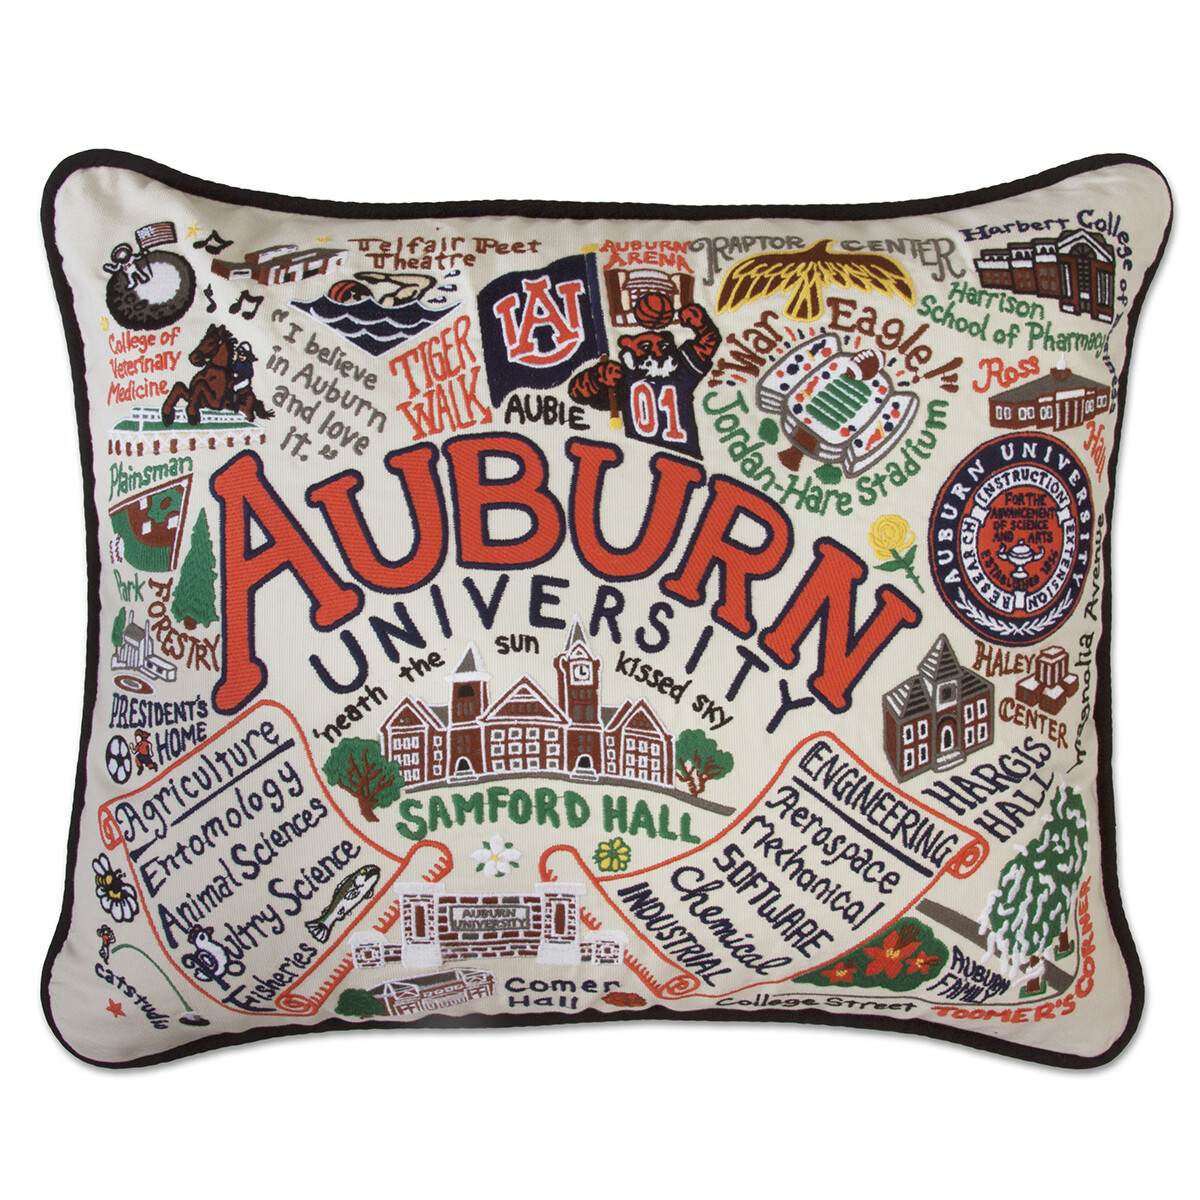 Auburn University pillow